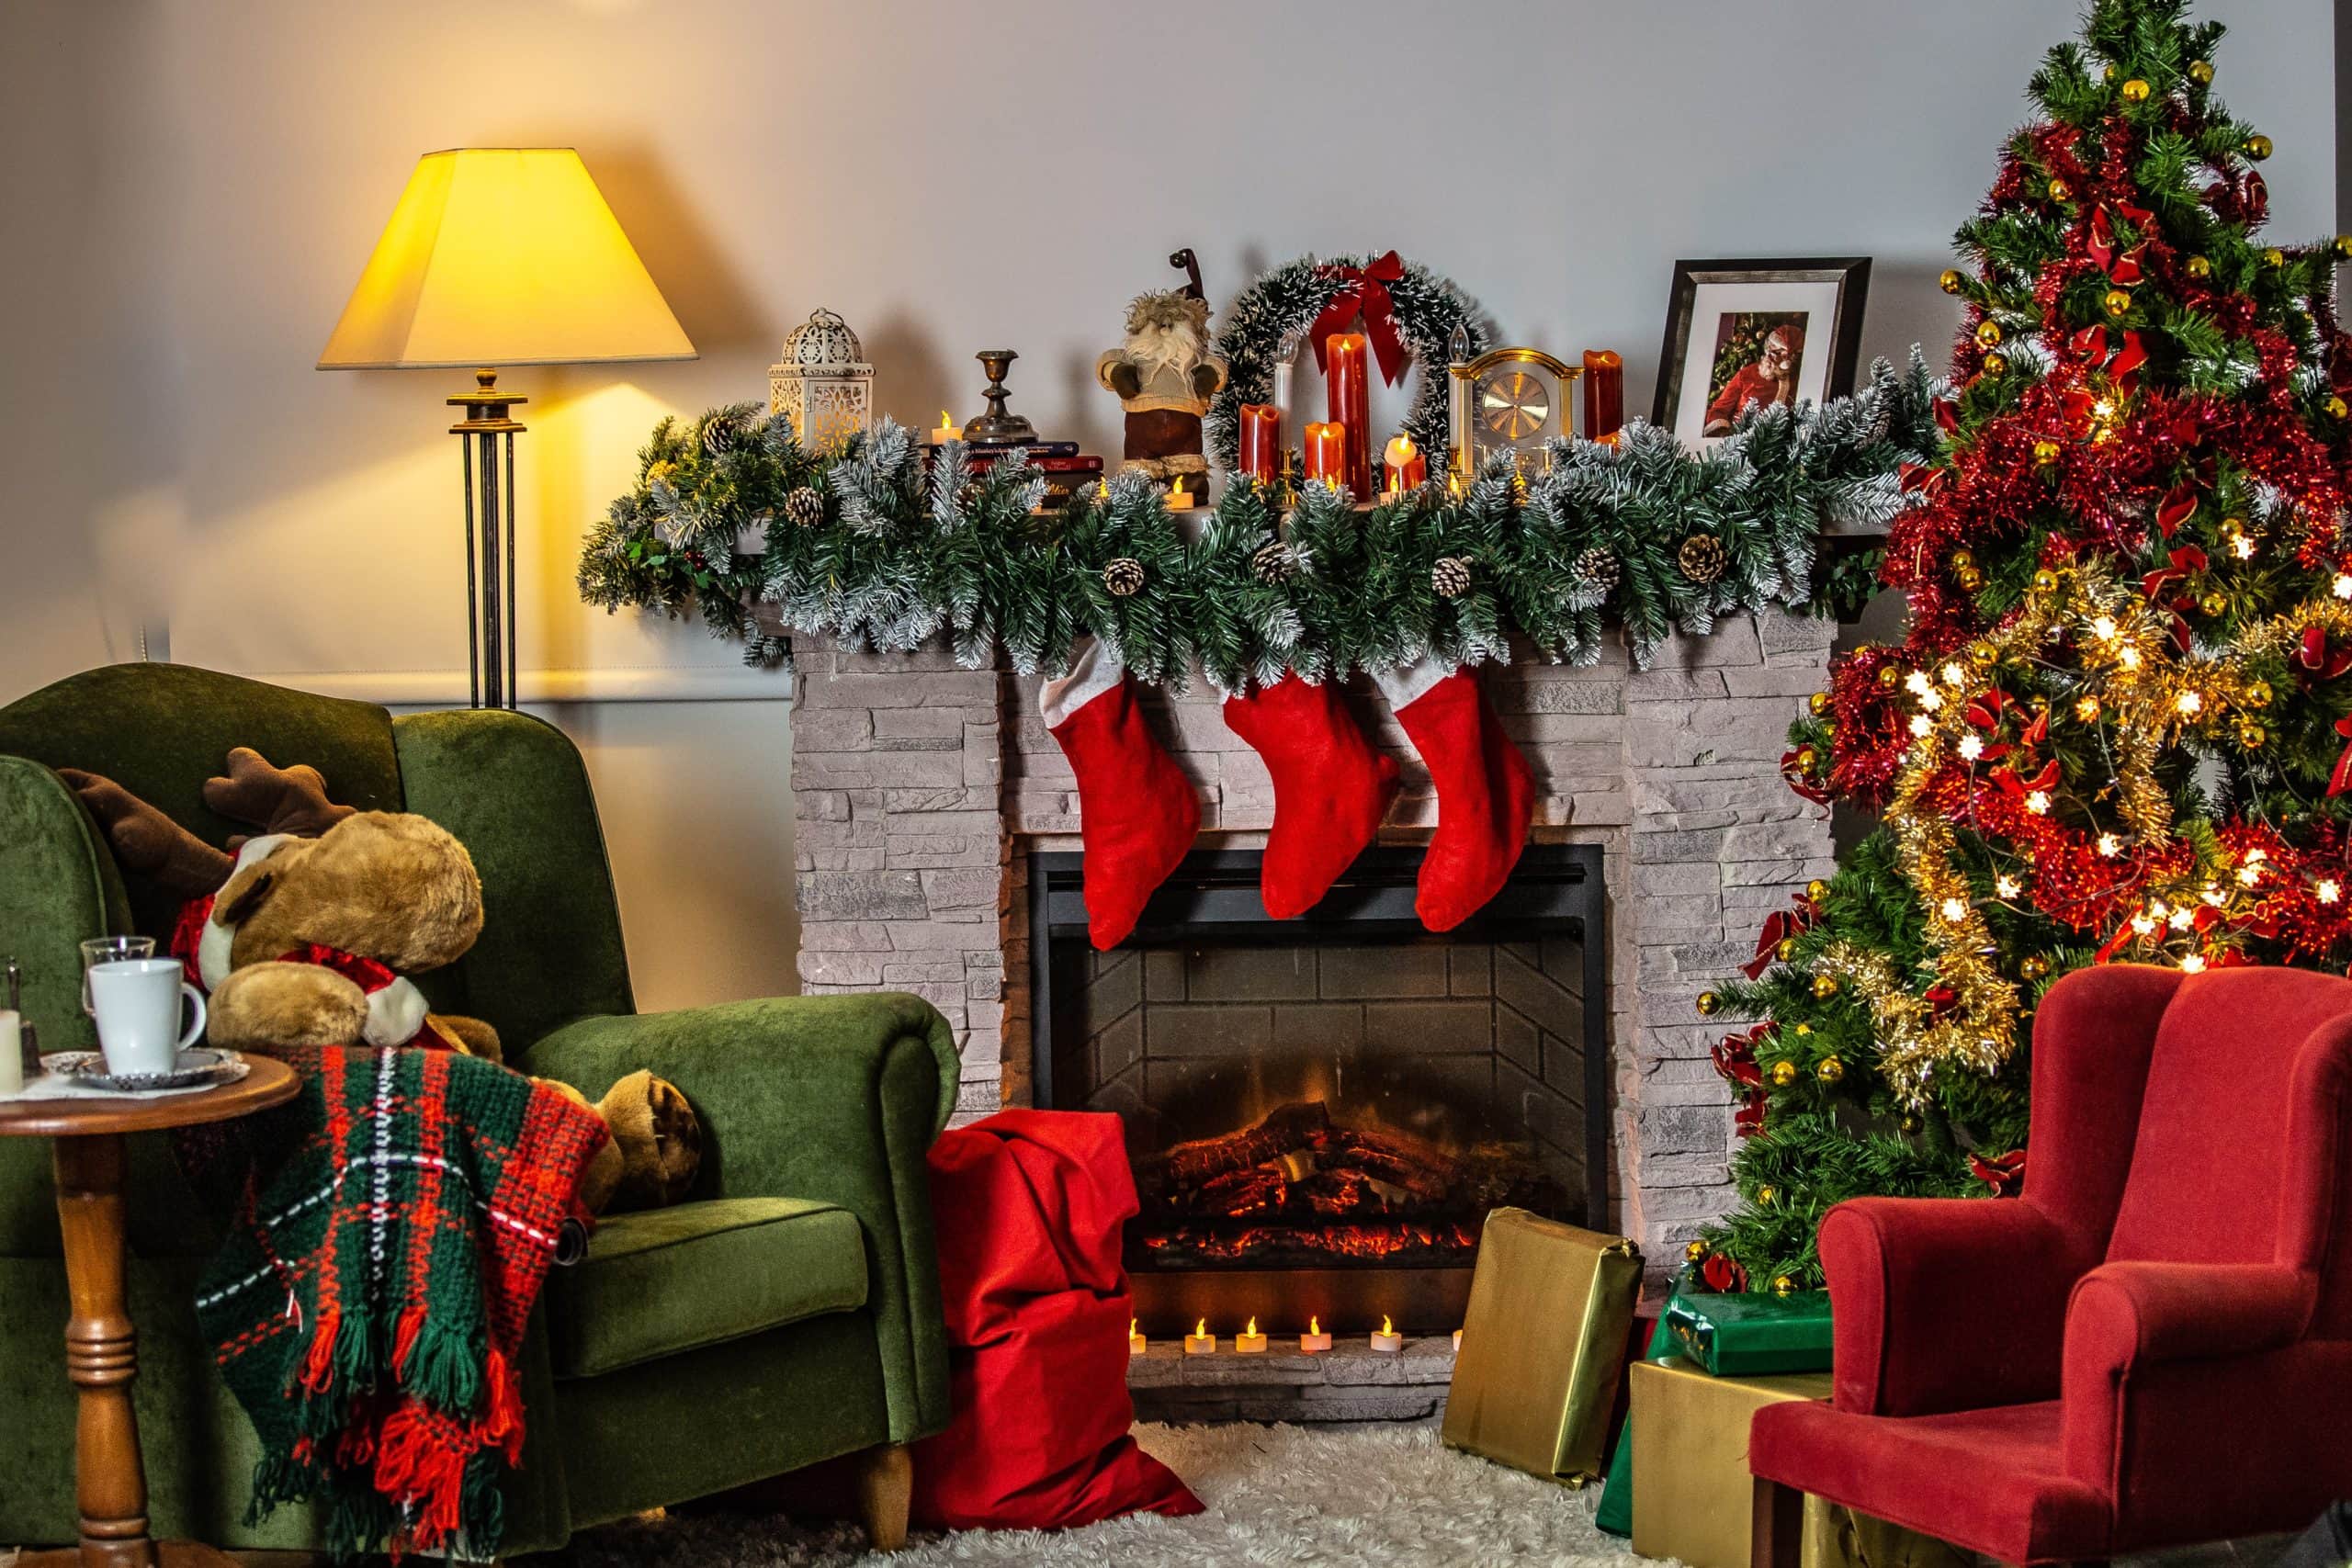 vianoce - lynda hinton RpWCPDxMcSo unsplash scaled - Tradičné vianočné zvyky nemôžu chýbať v domácnosti